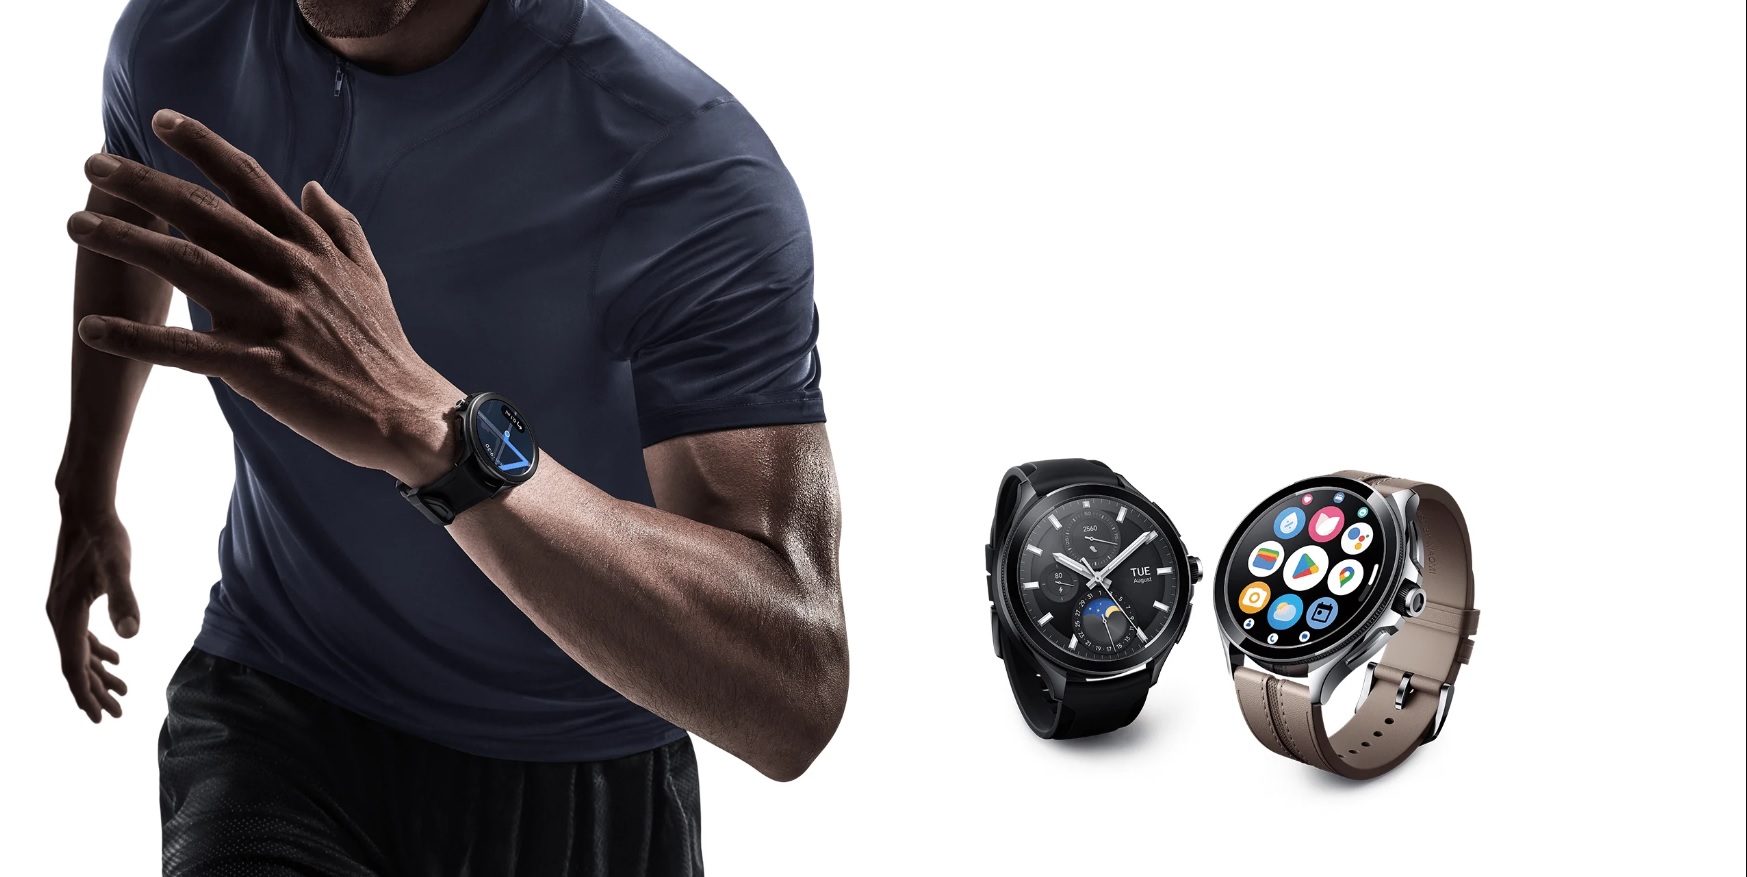 Xiaomi anunció su Watch 2 Pro con tecnología WearOS y procesador Snapdragon  W5+ - Cultura Geek